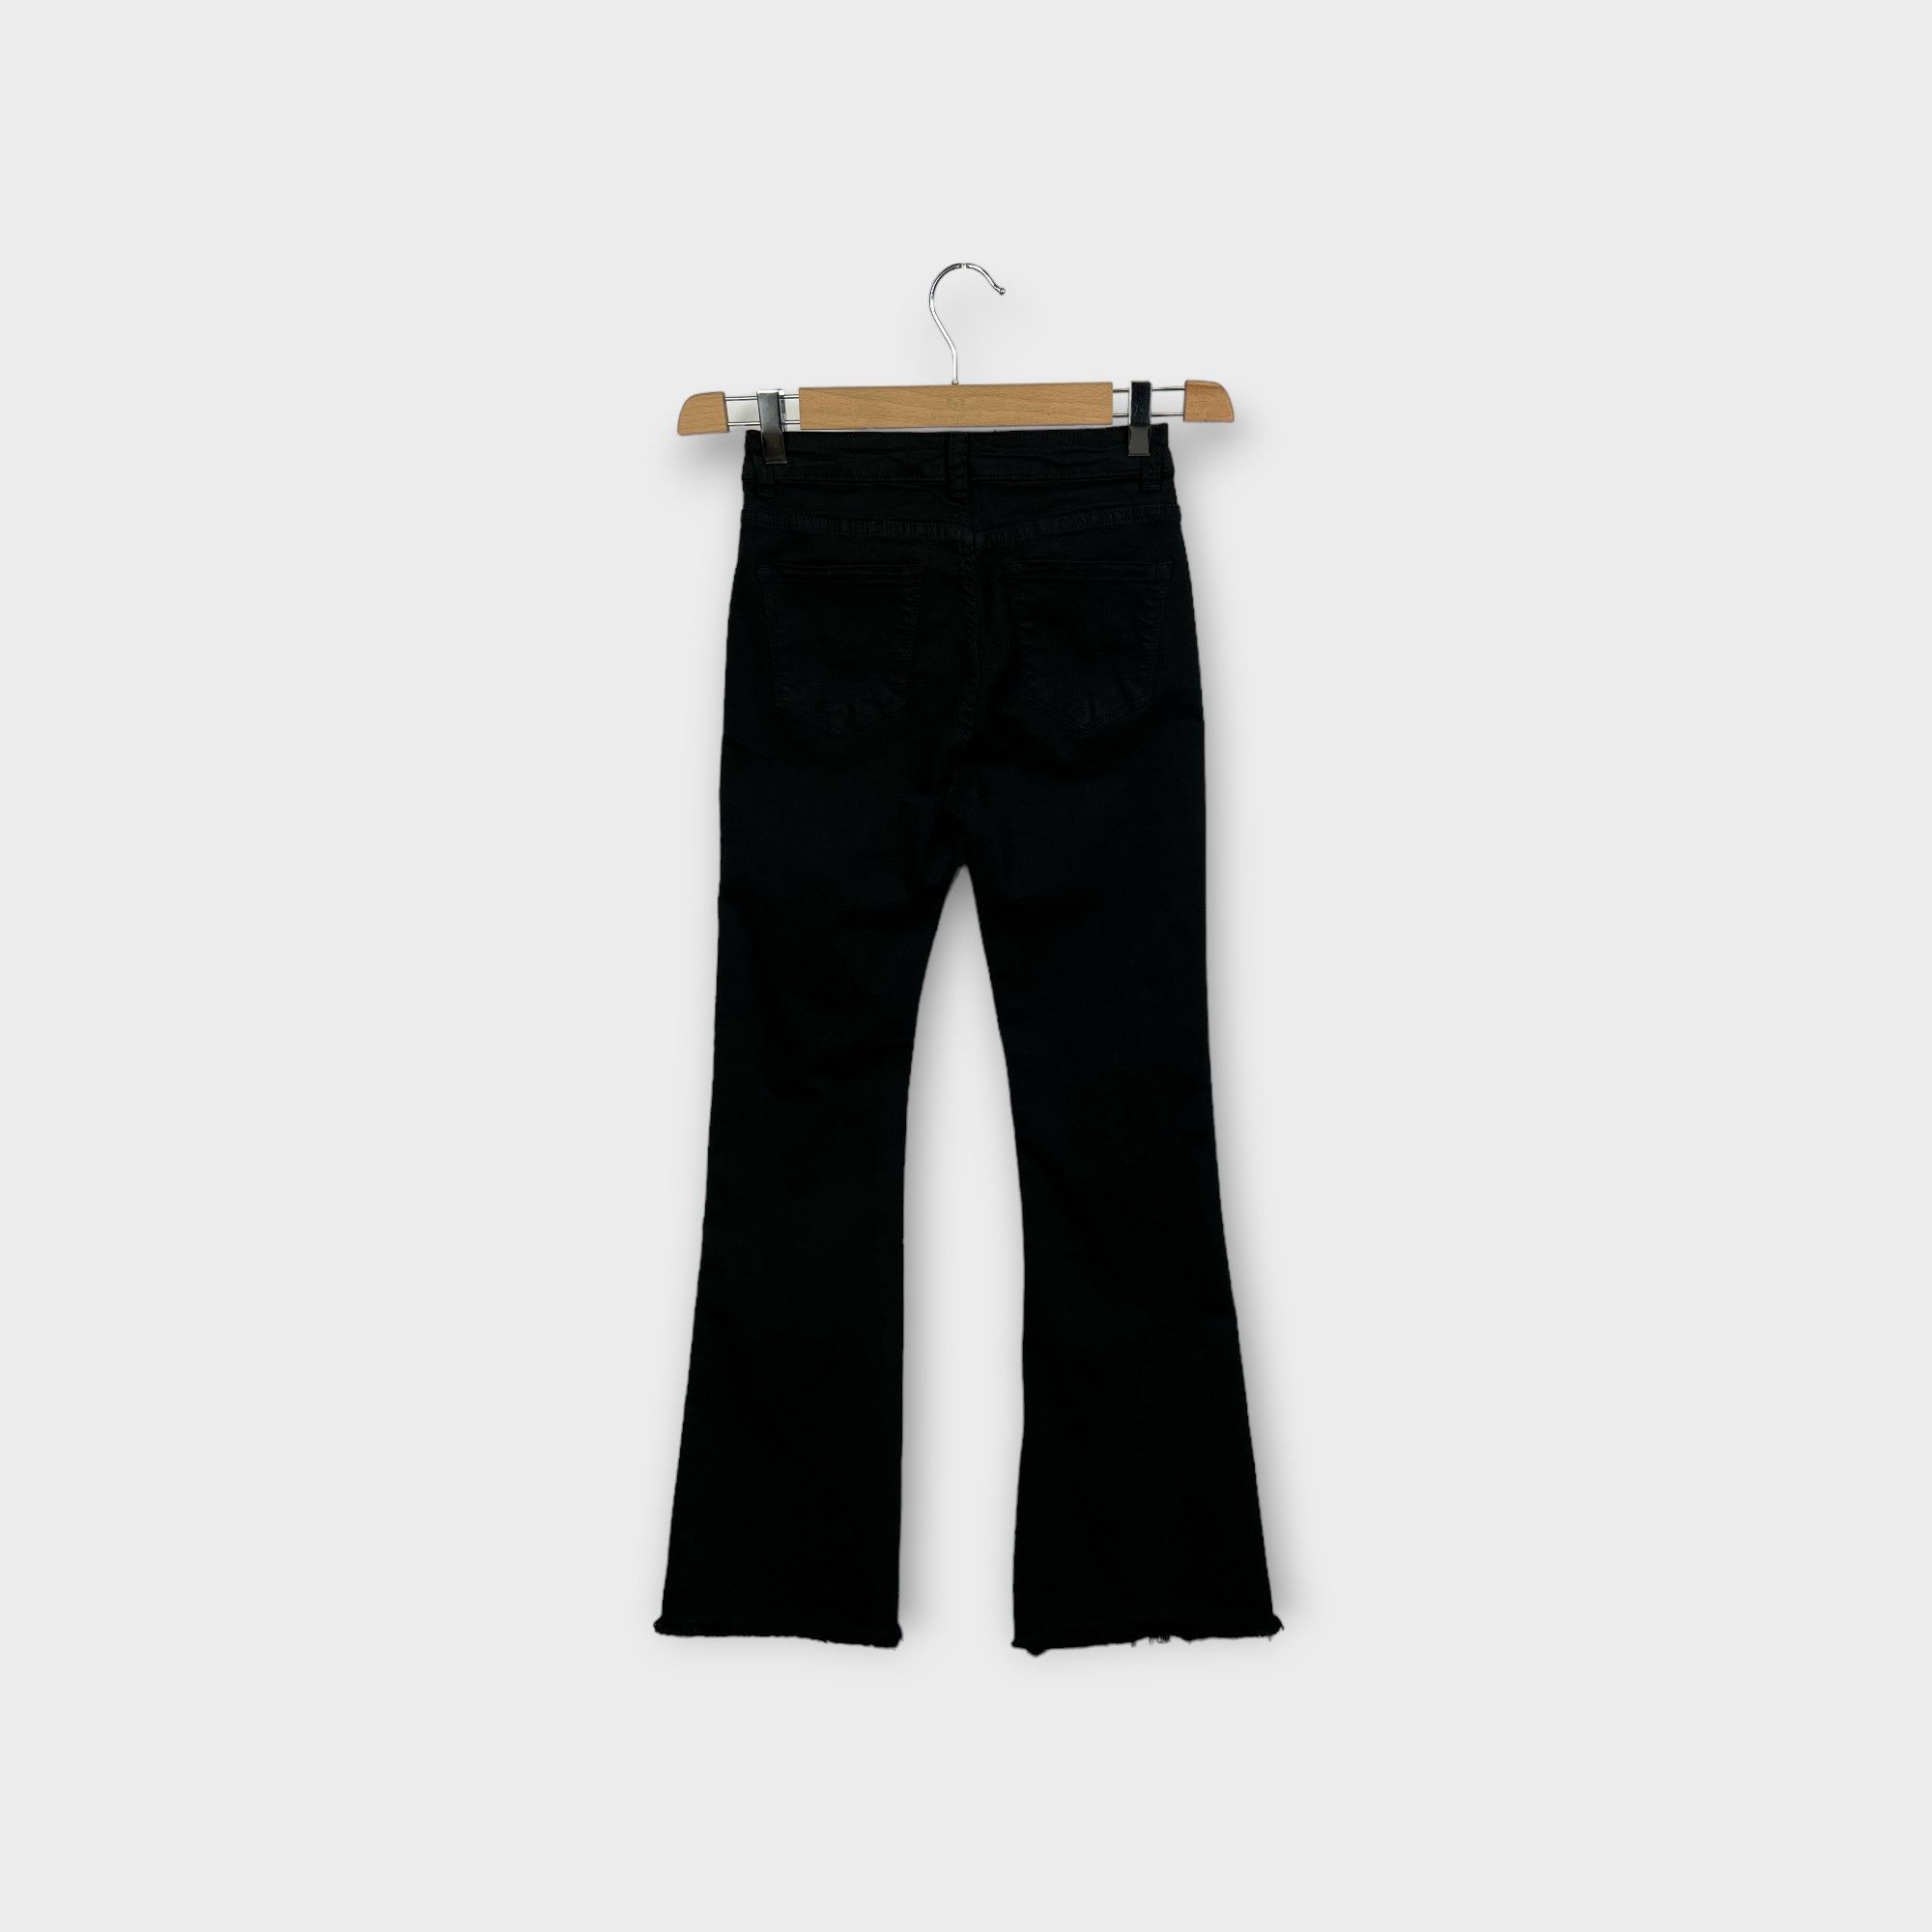 images/virtuemart/product/HELLEH Pantaloni donna modello cinque tasche in tela di cotone stretch con fondo a zampetta sfrangiata colore nero 2.jpg